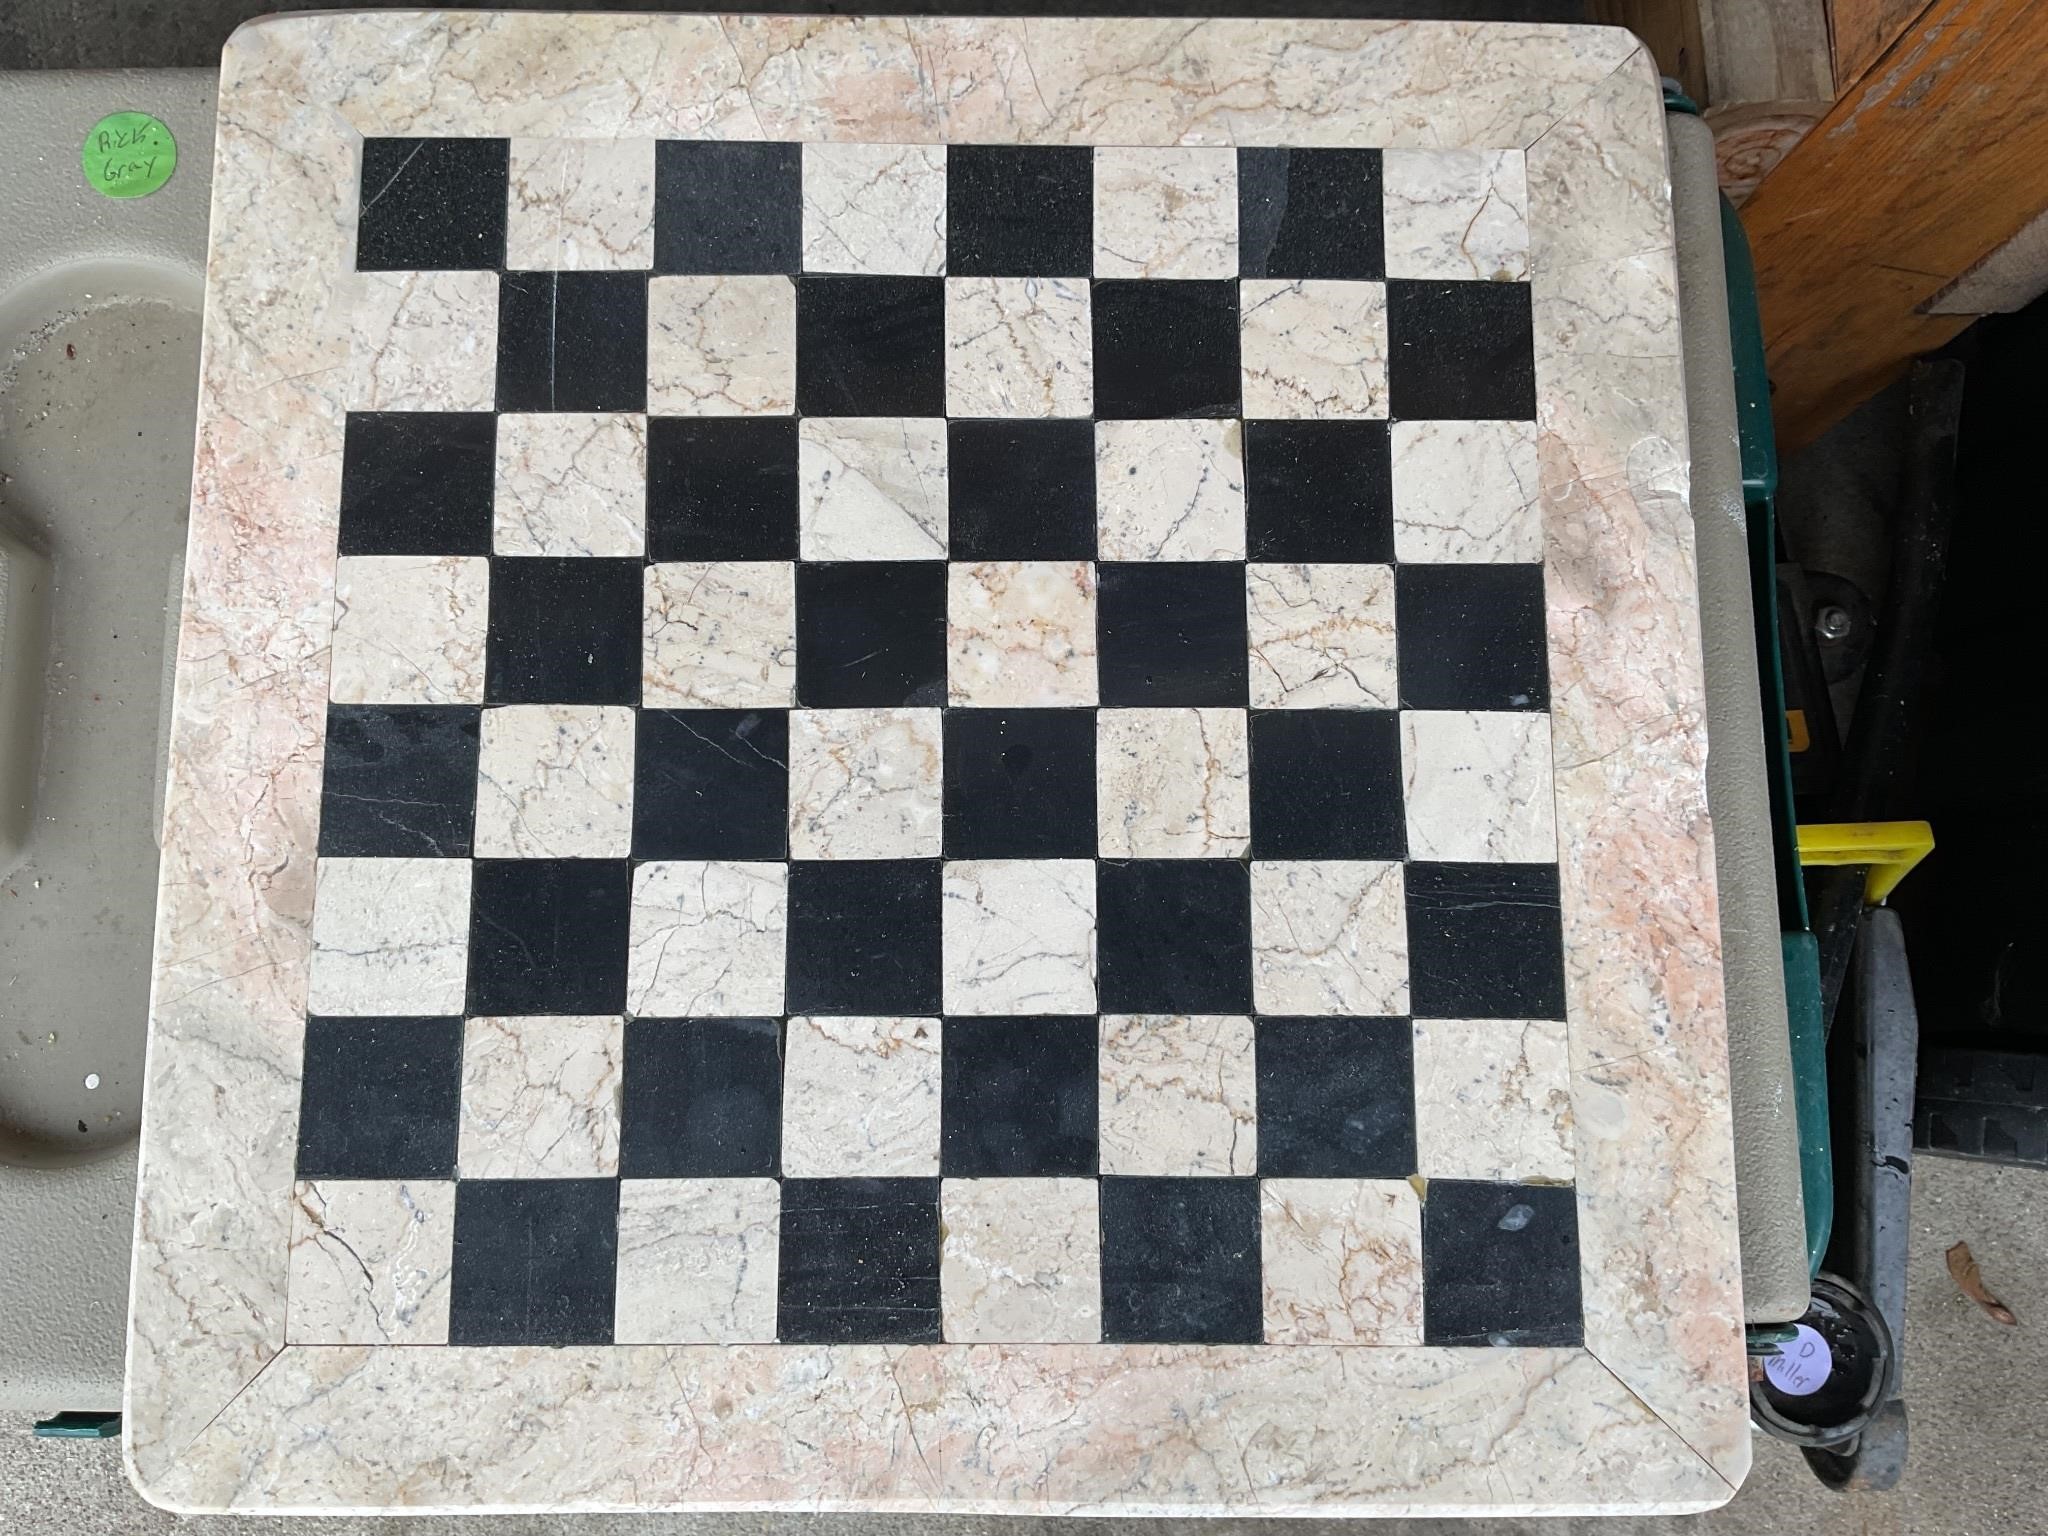 Checker board